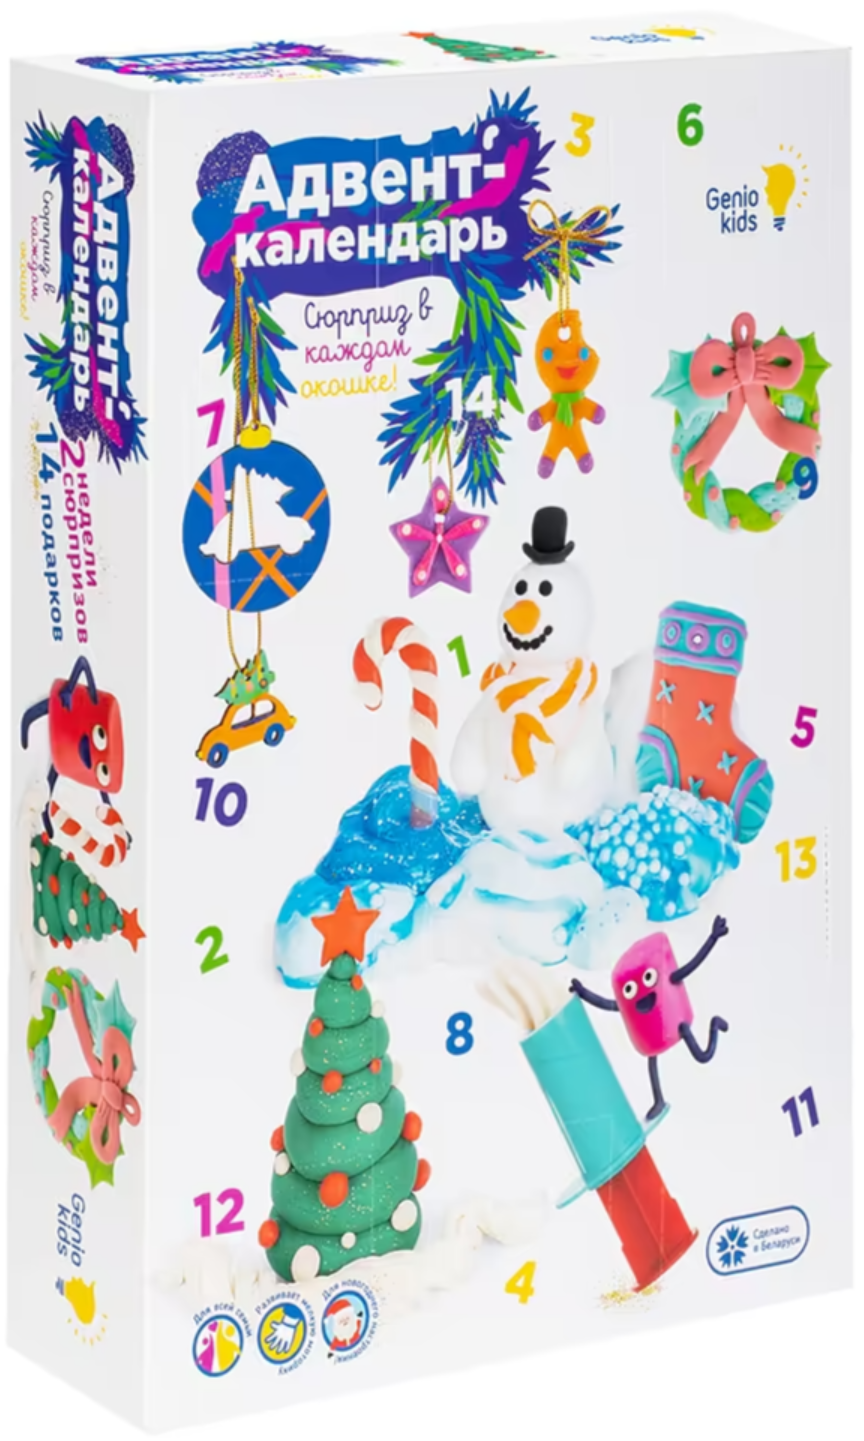 Набор для детского творчества адвент-календарь 14 подарков GENIO KIDS TA1819